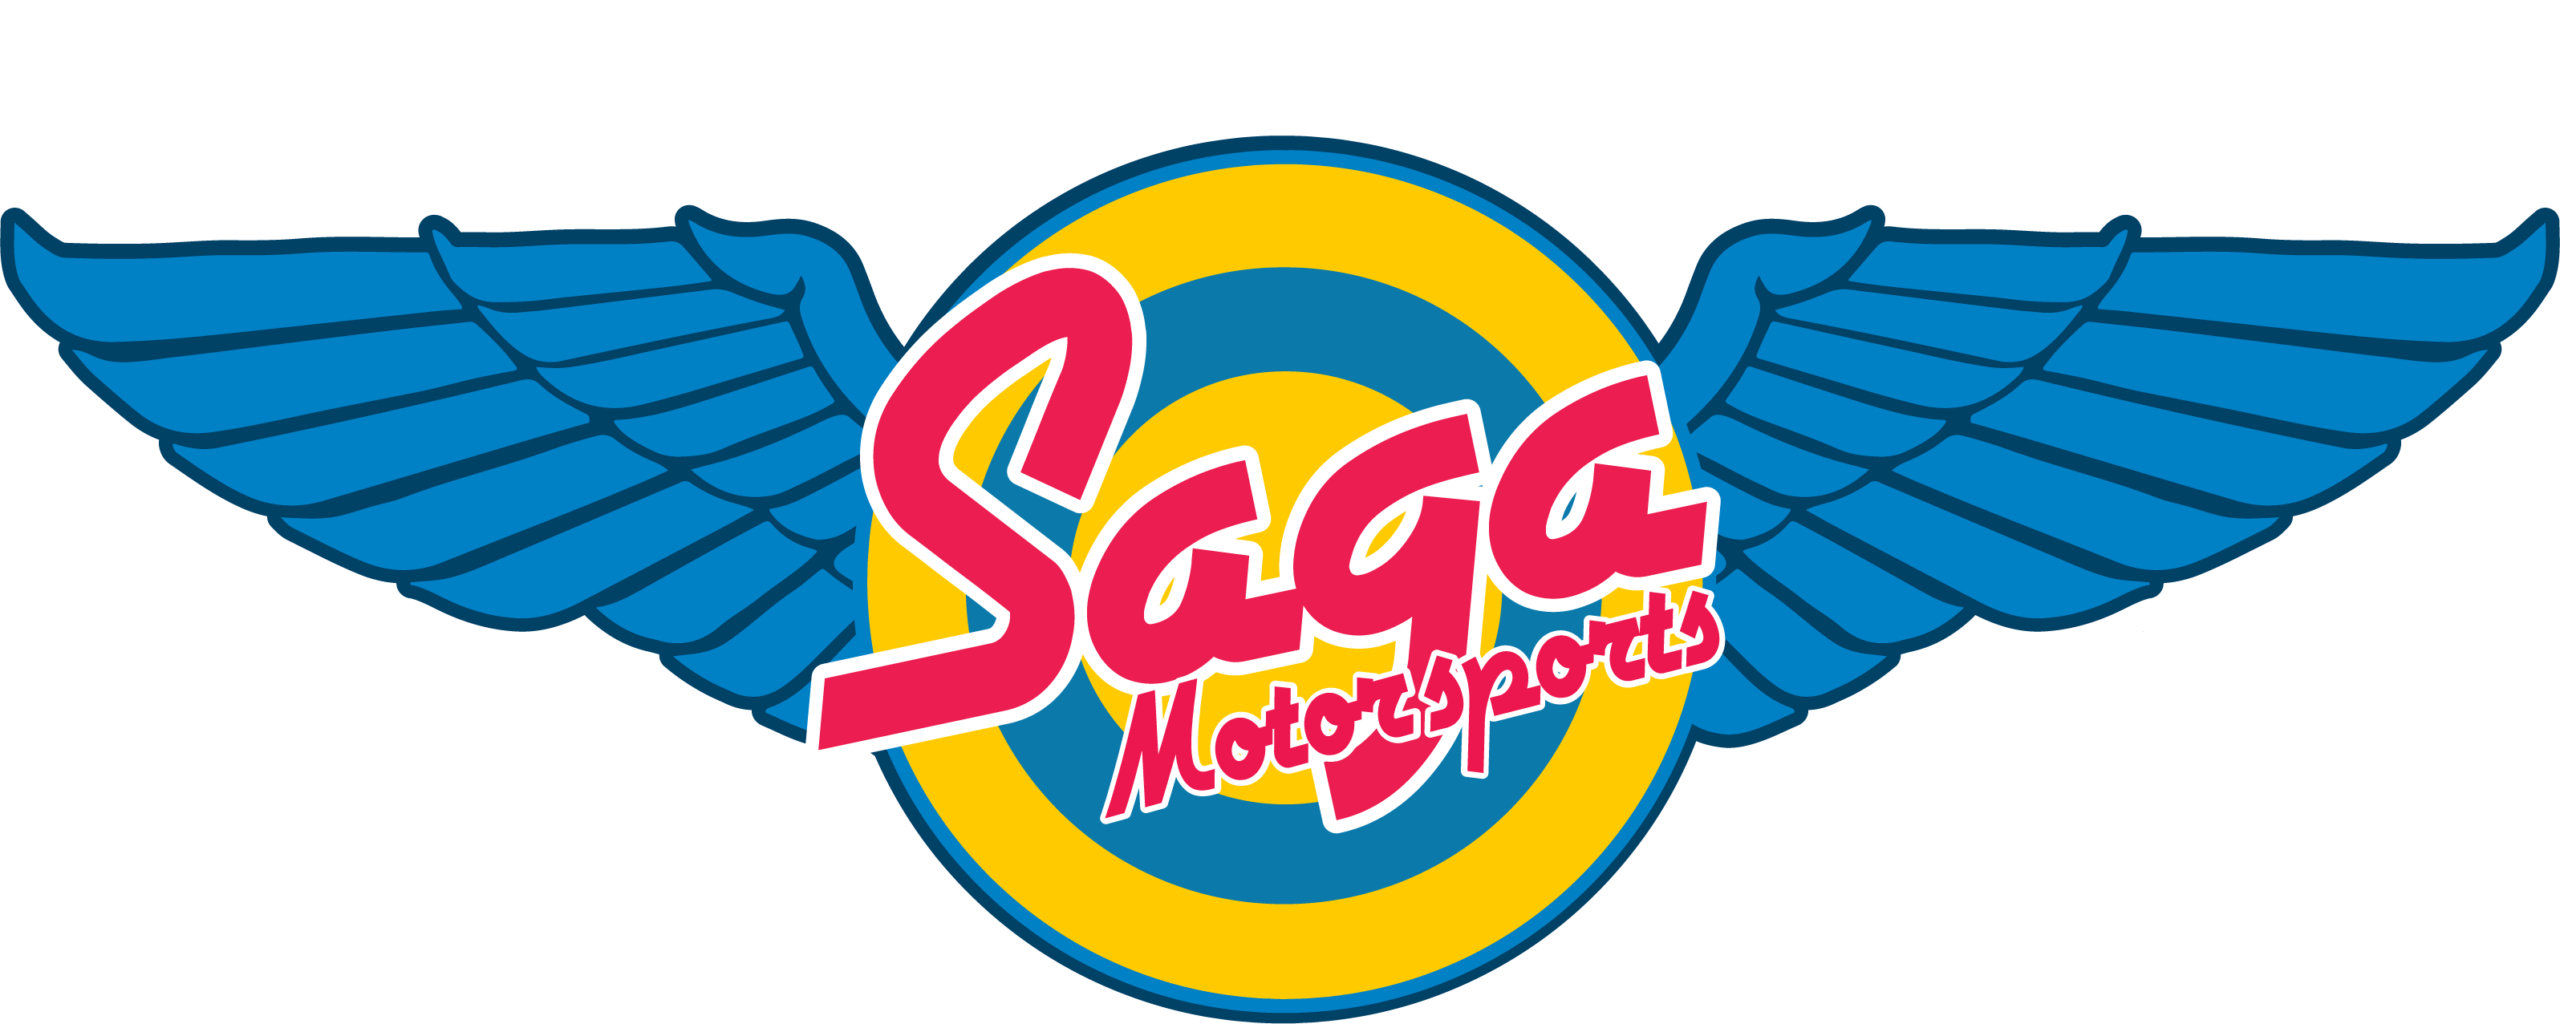 Saga Motorsports